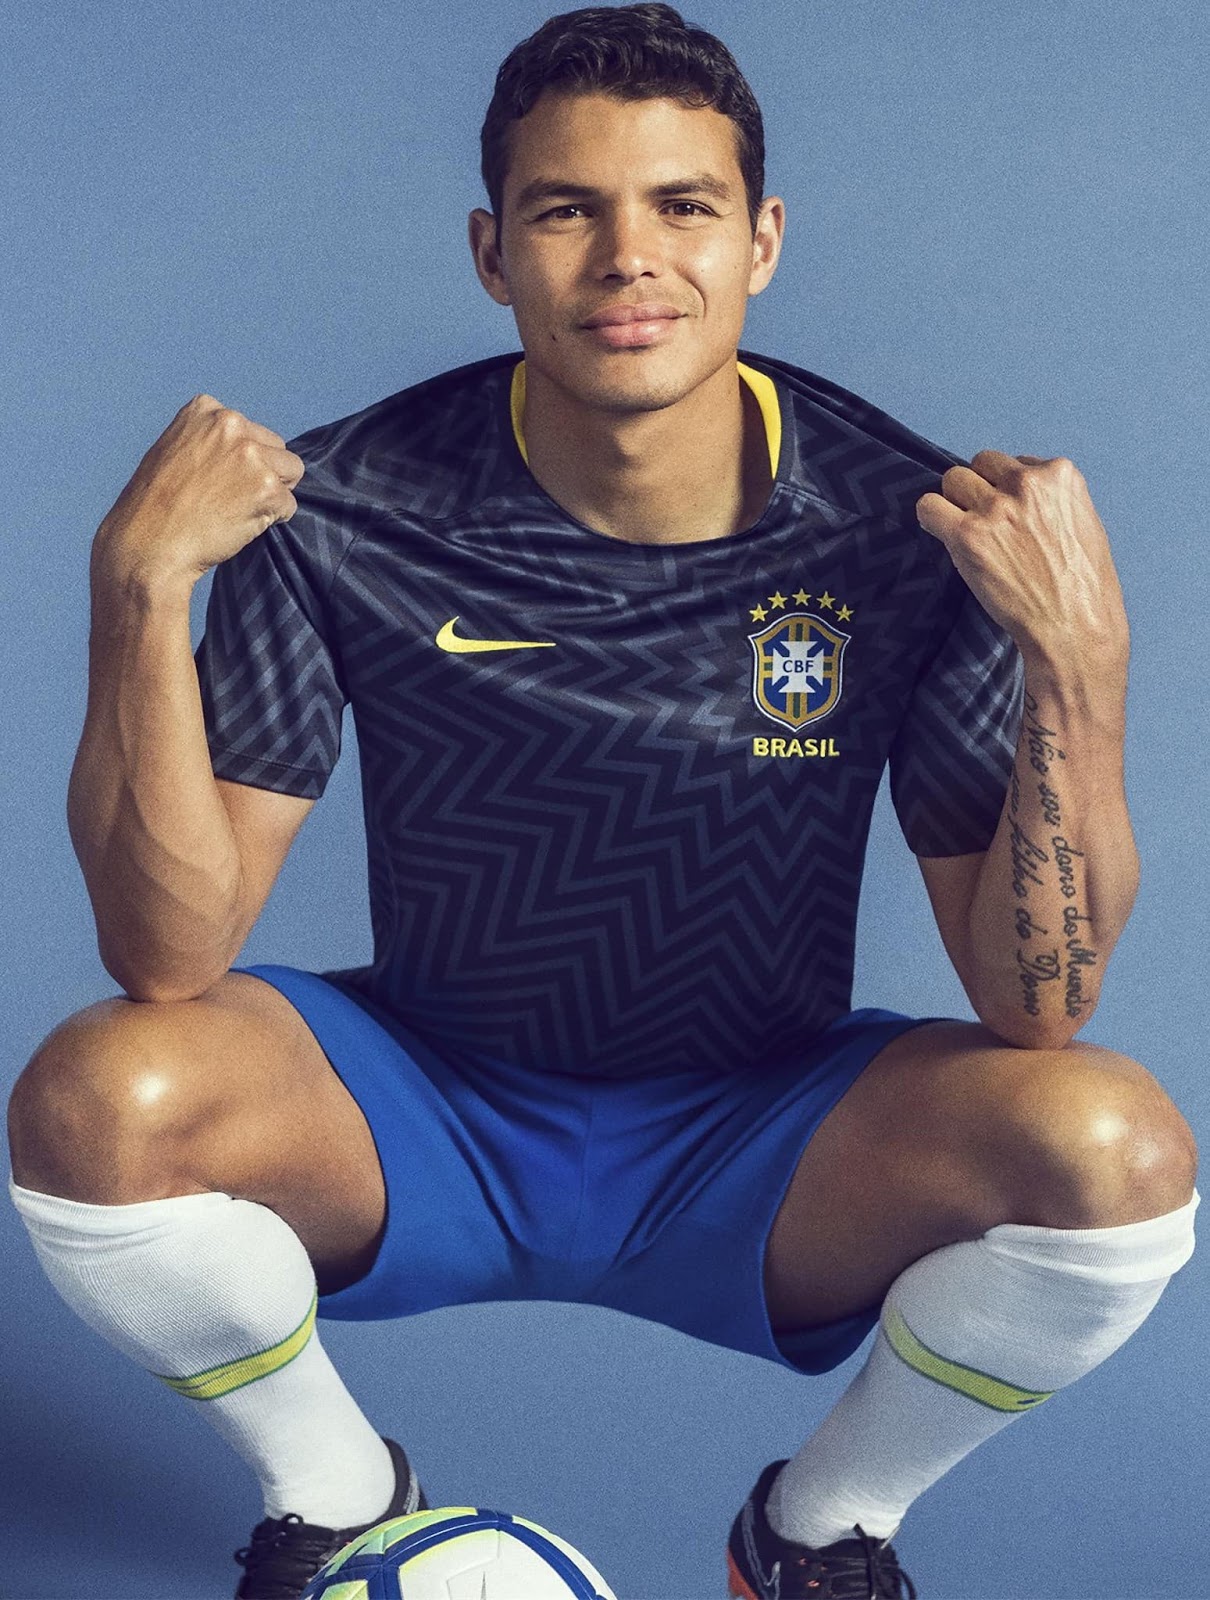 ブラジル代表 2018 ワールドカップユニフォーム - ユニ11